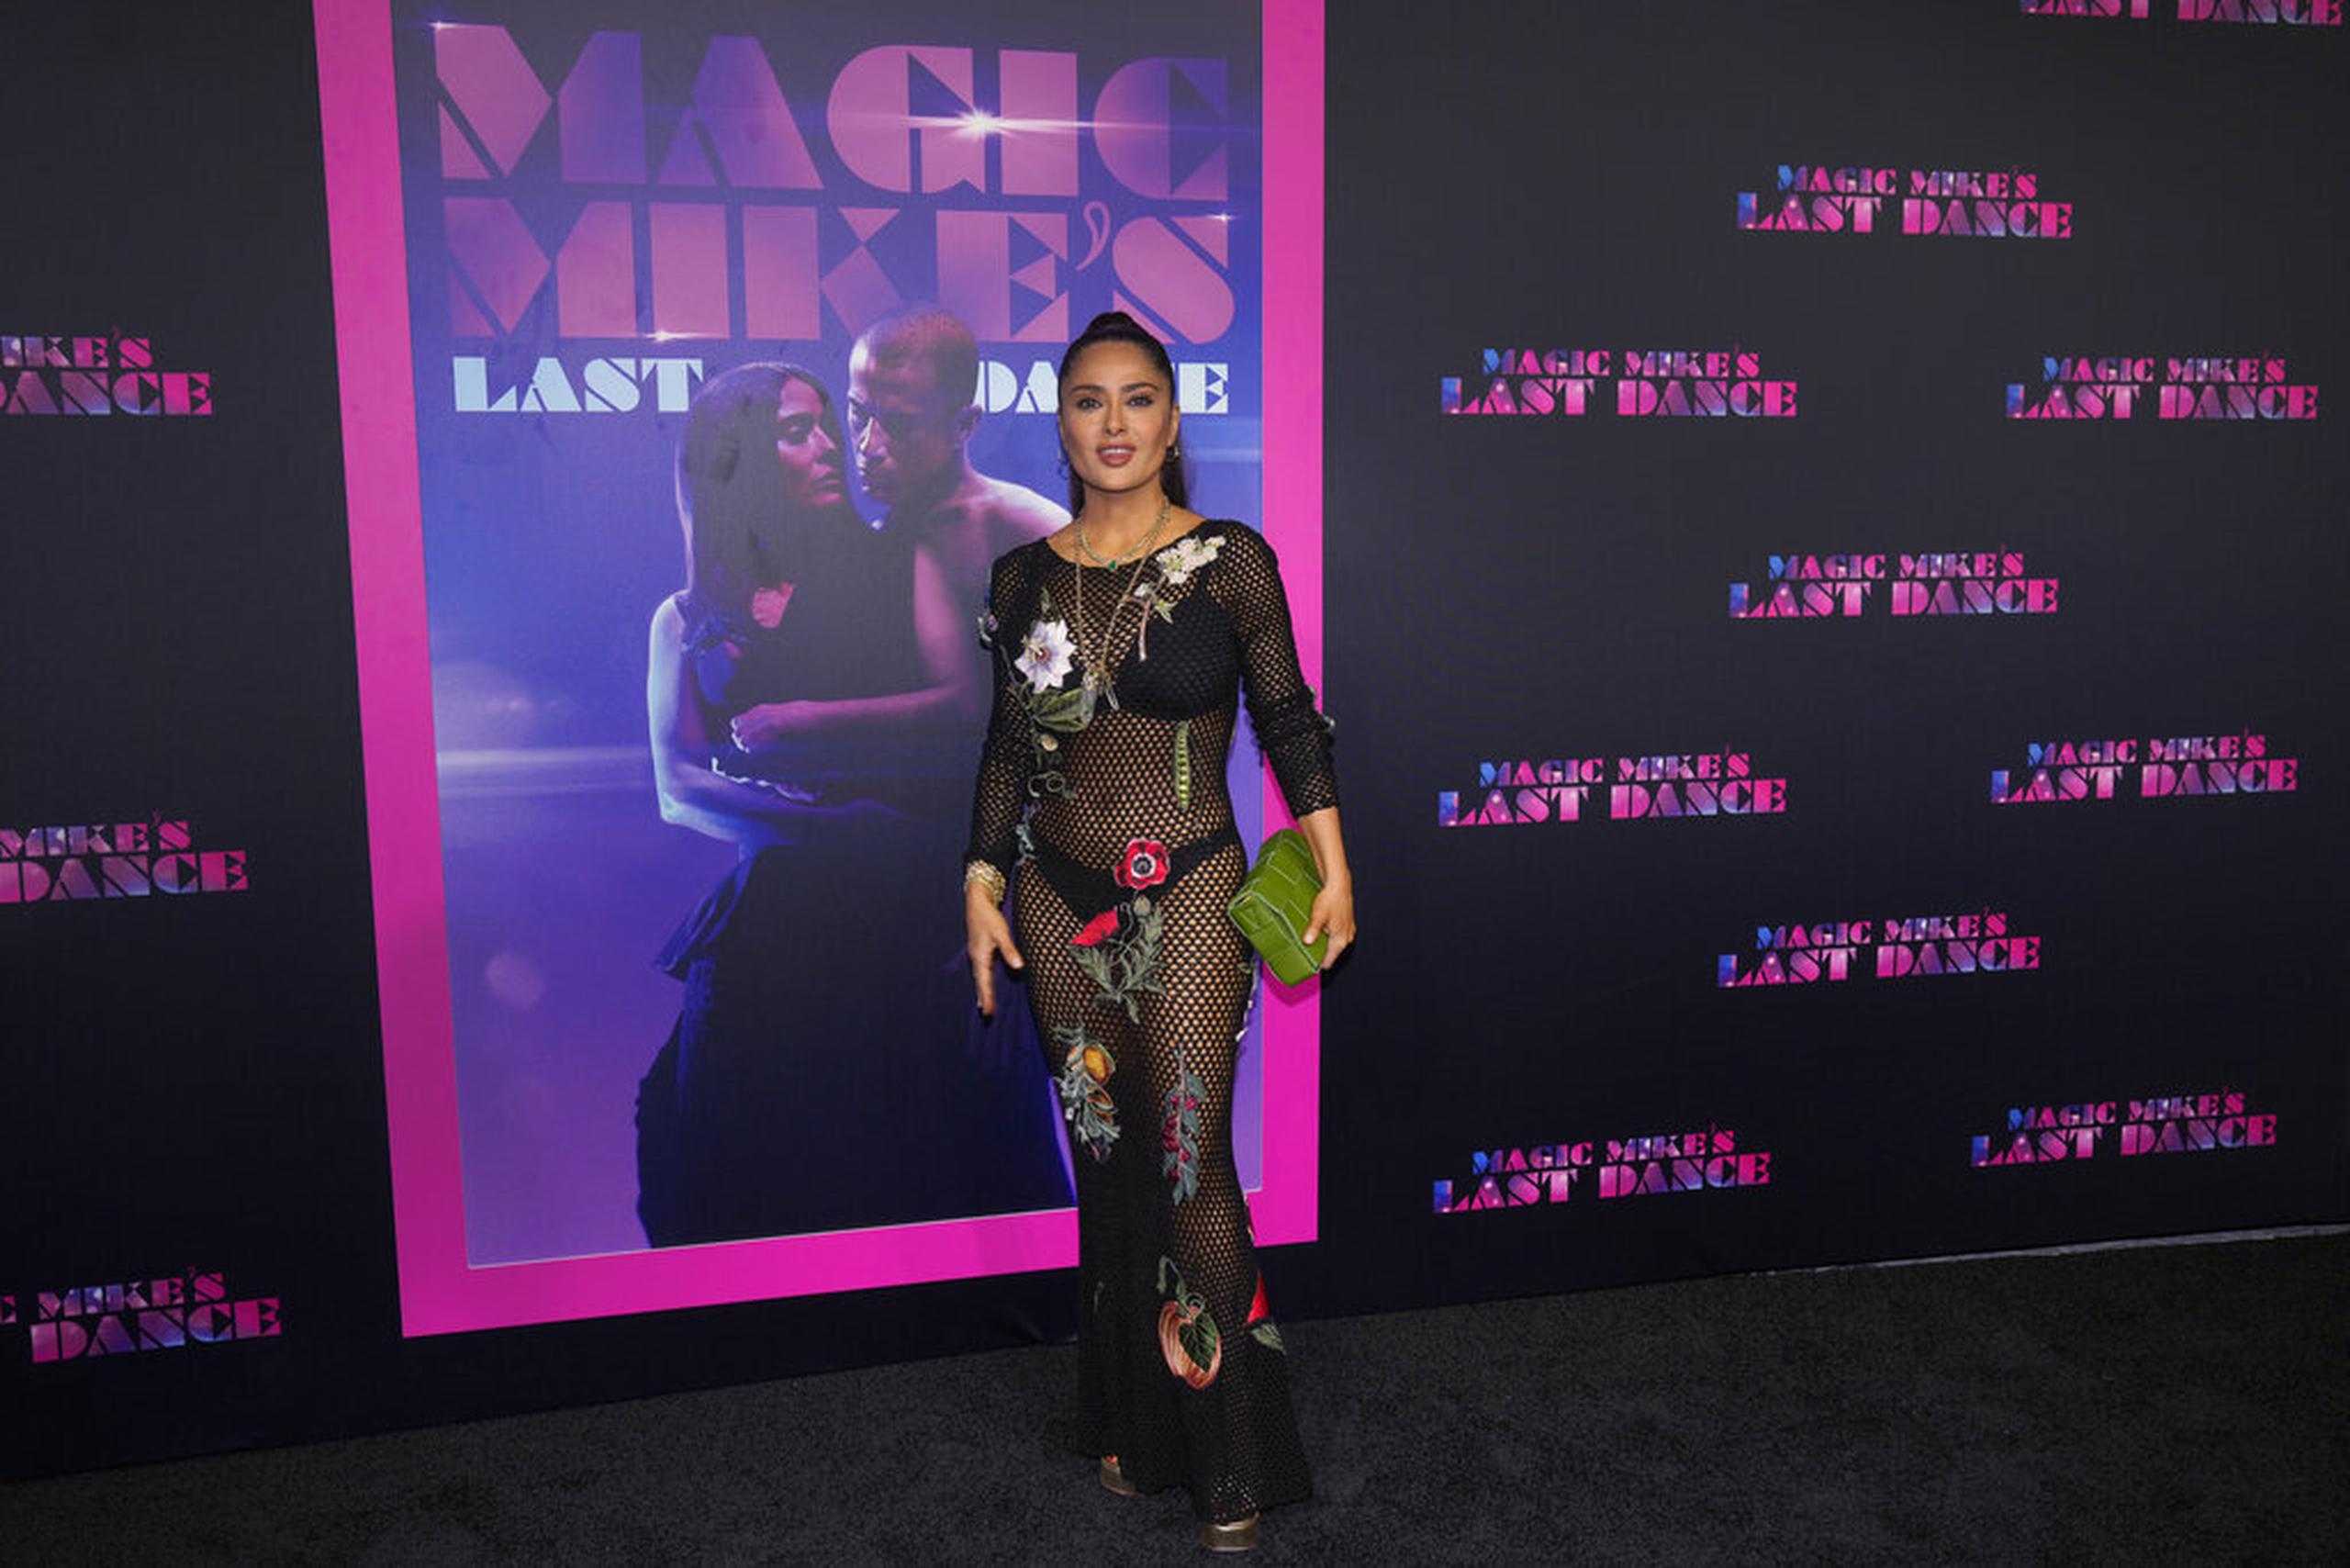 Salma Hayek en el estreno de la película "Magic Mike's Last Dance" el pasado 25 de enero en Miami Beach.